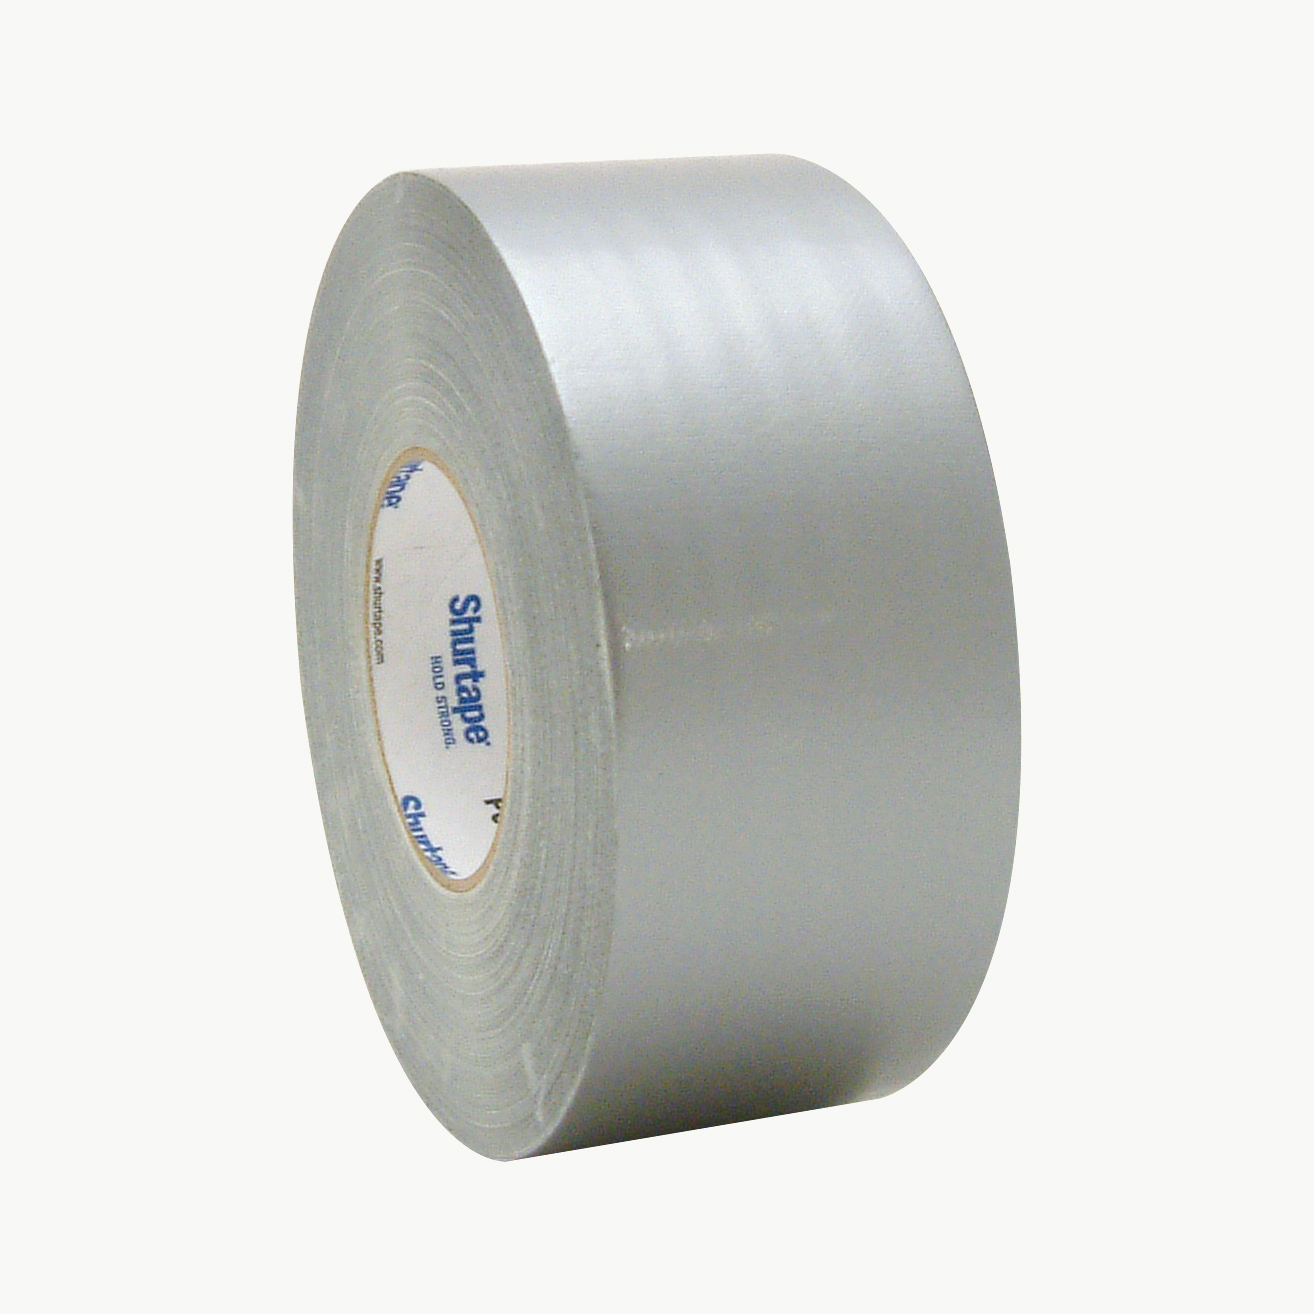 Shurtape PC-657 Premium Grade Duct Tape